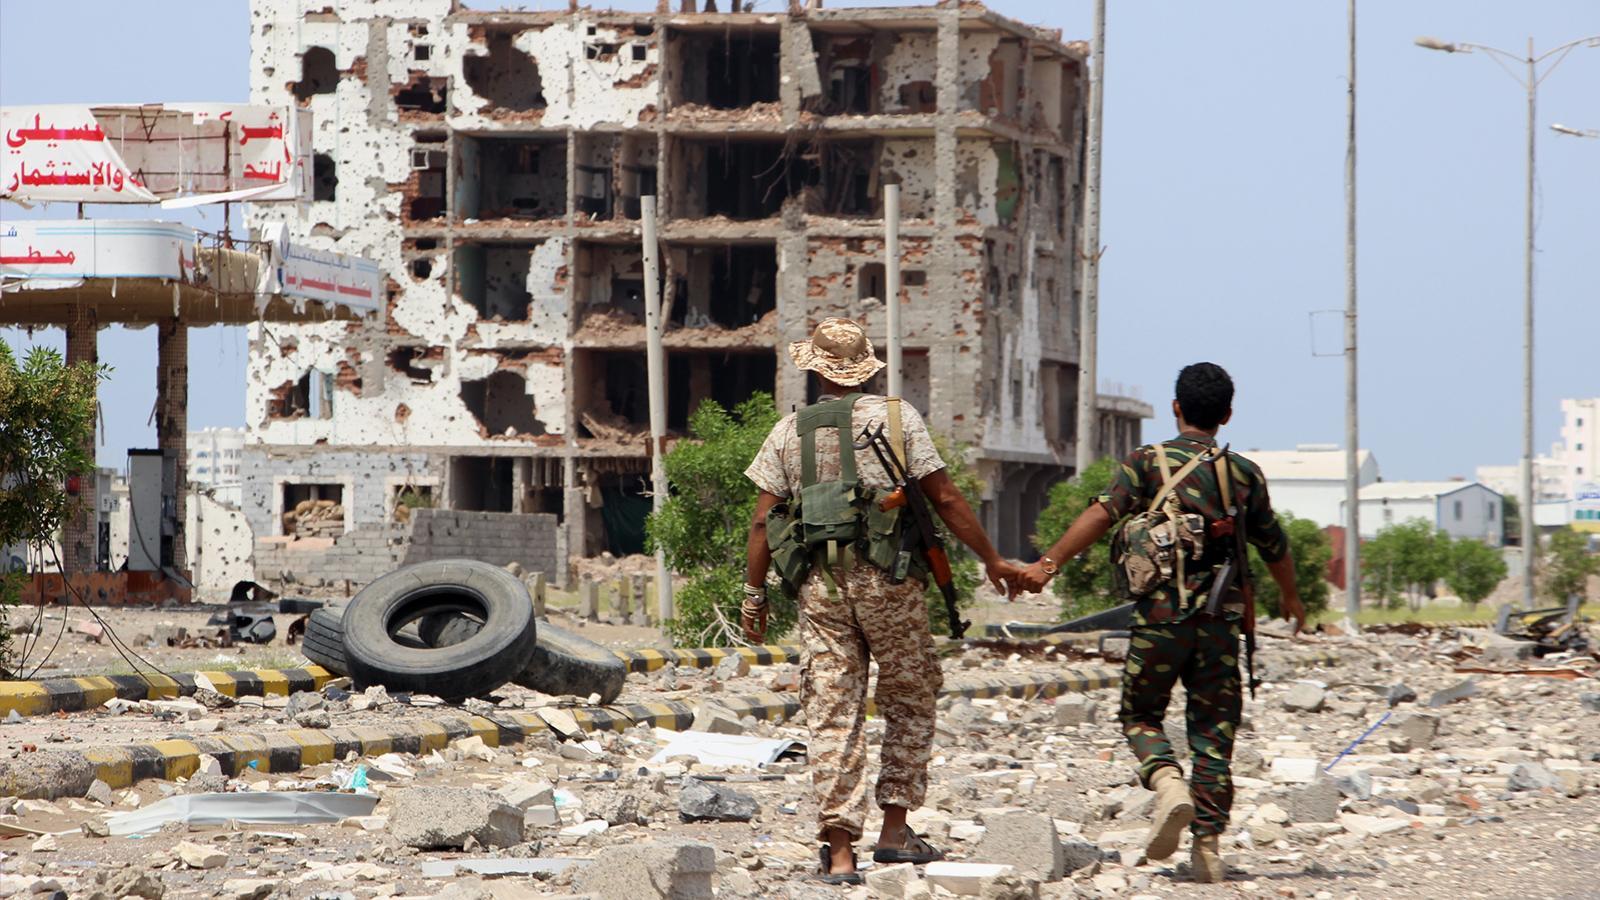 مقاتلان يمنيان في الشارع الرئيسي لإحدى المدن اليمنية الحدودية مع السعودية